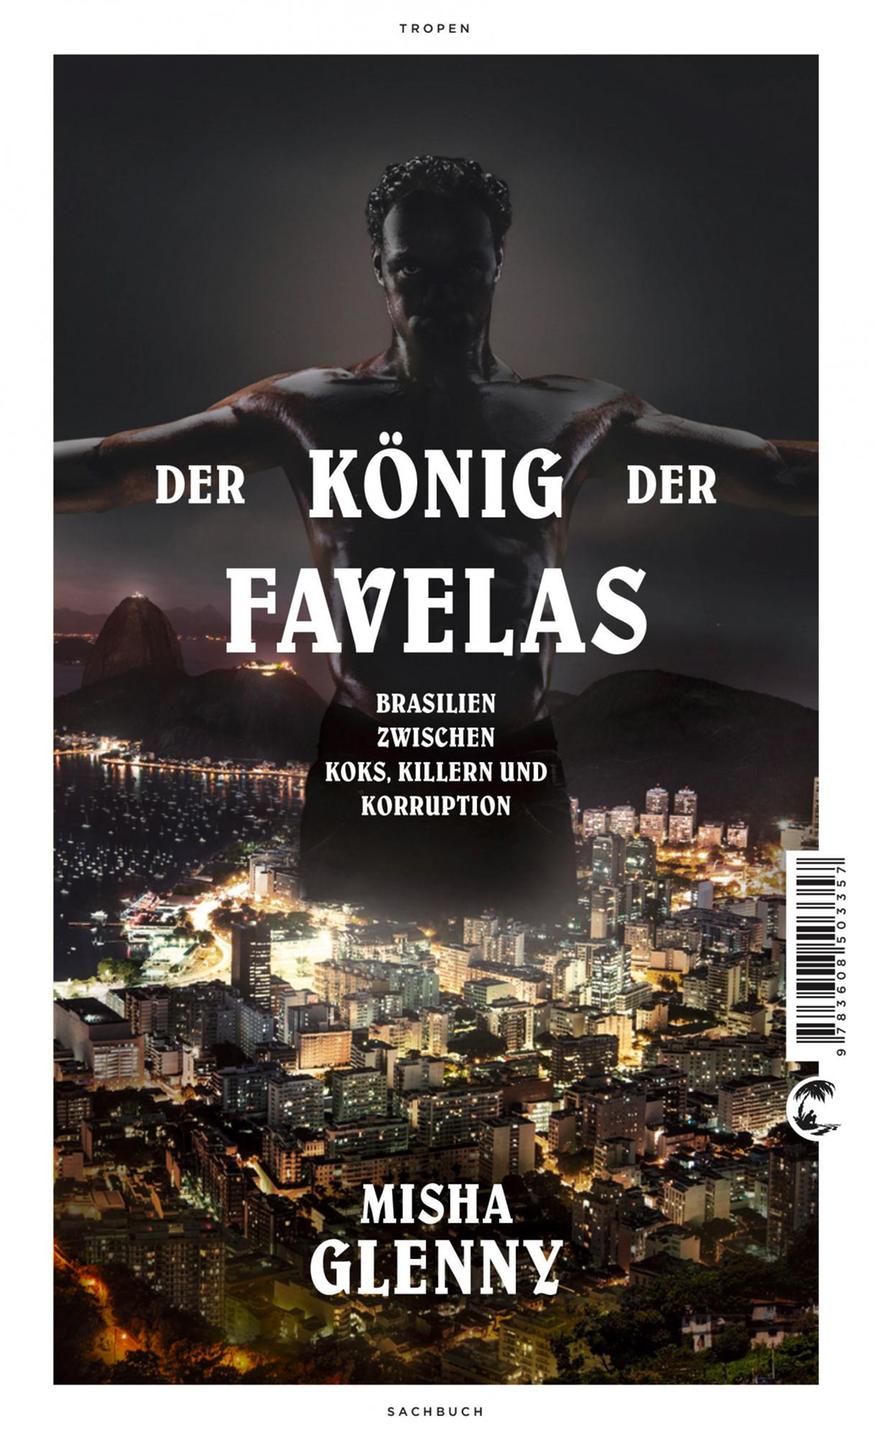 Buchcover von "Der König der Favelas: Brasilien zwischen Koks, Killern und Korruption", von Misha Glenny, Tropen Verlag, Stuttgart